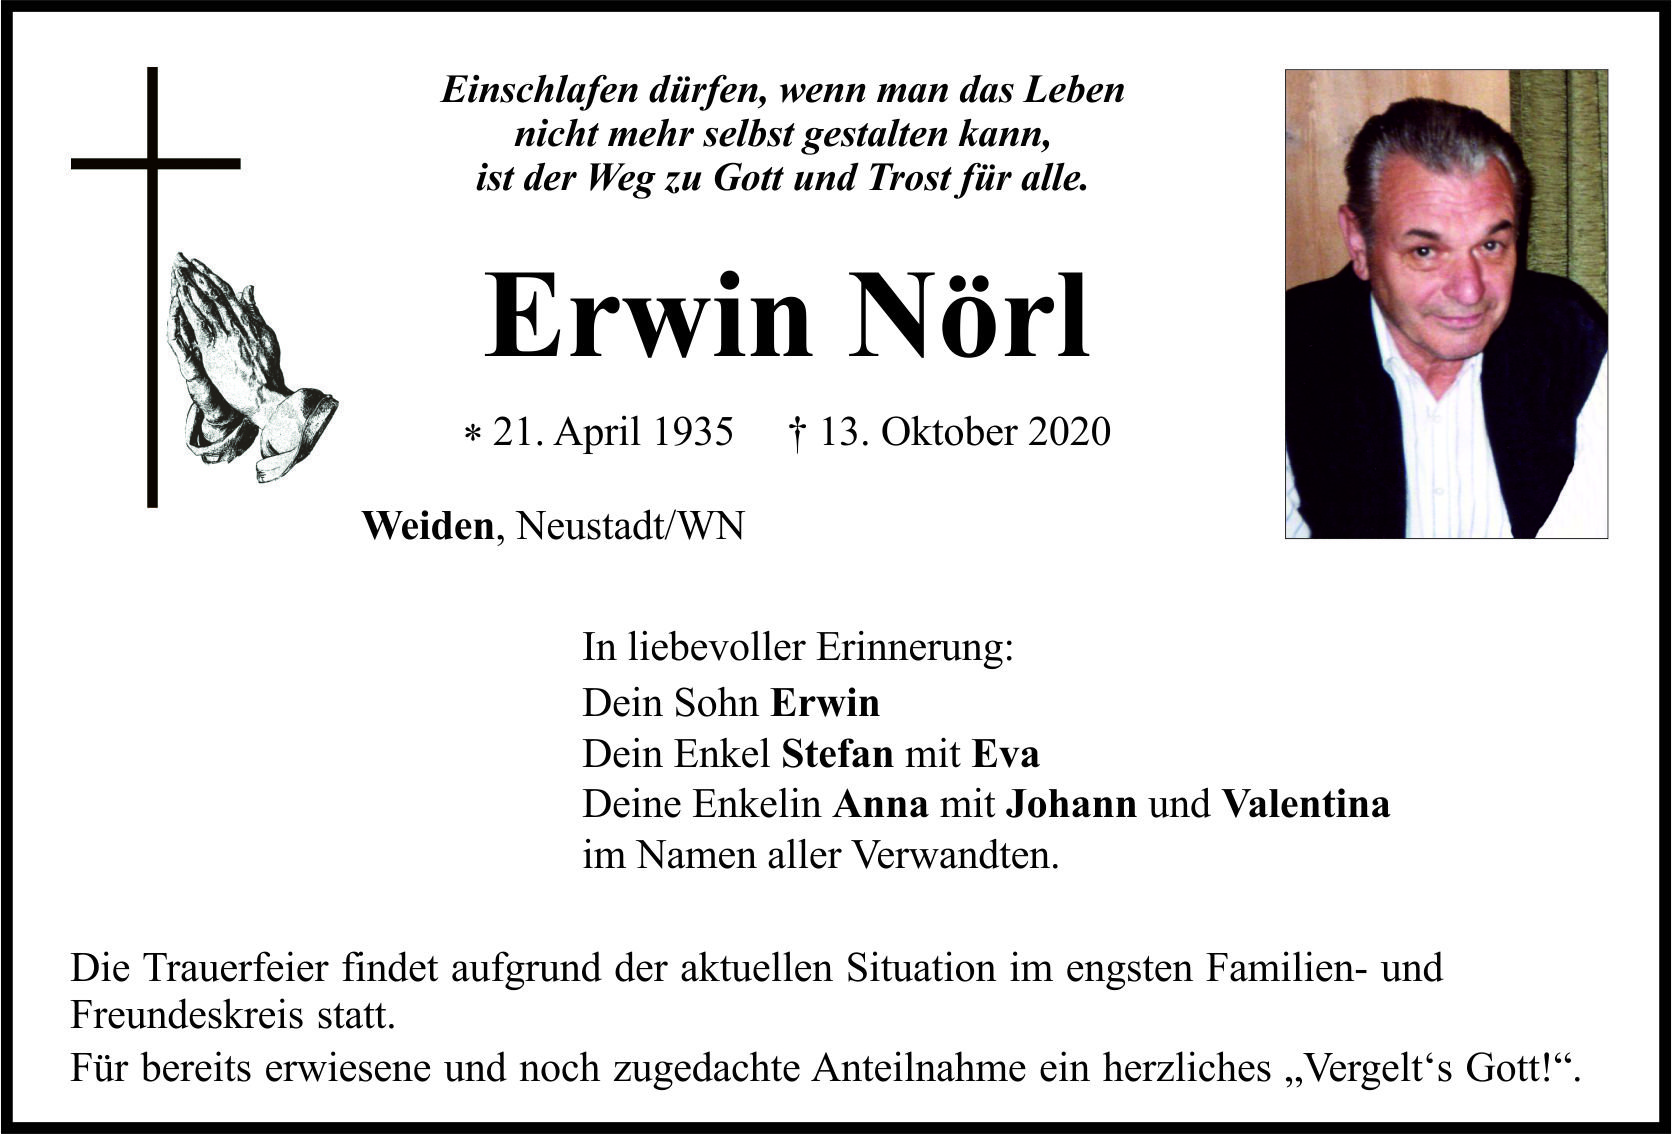 Traueranzeige Erwin Nörl, Weiden